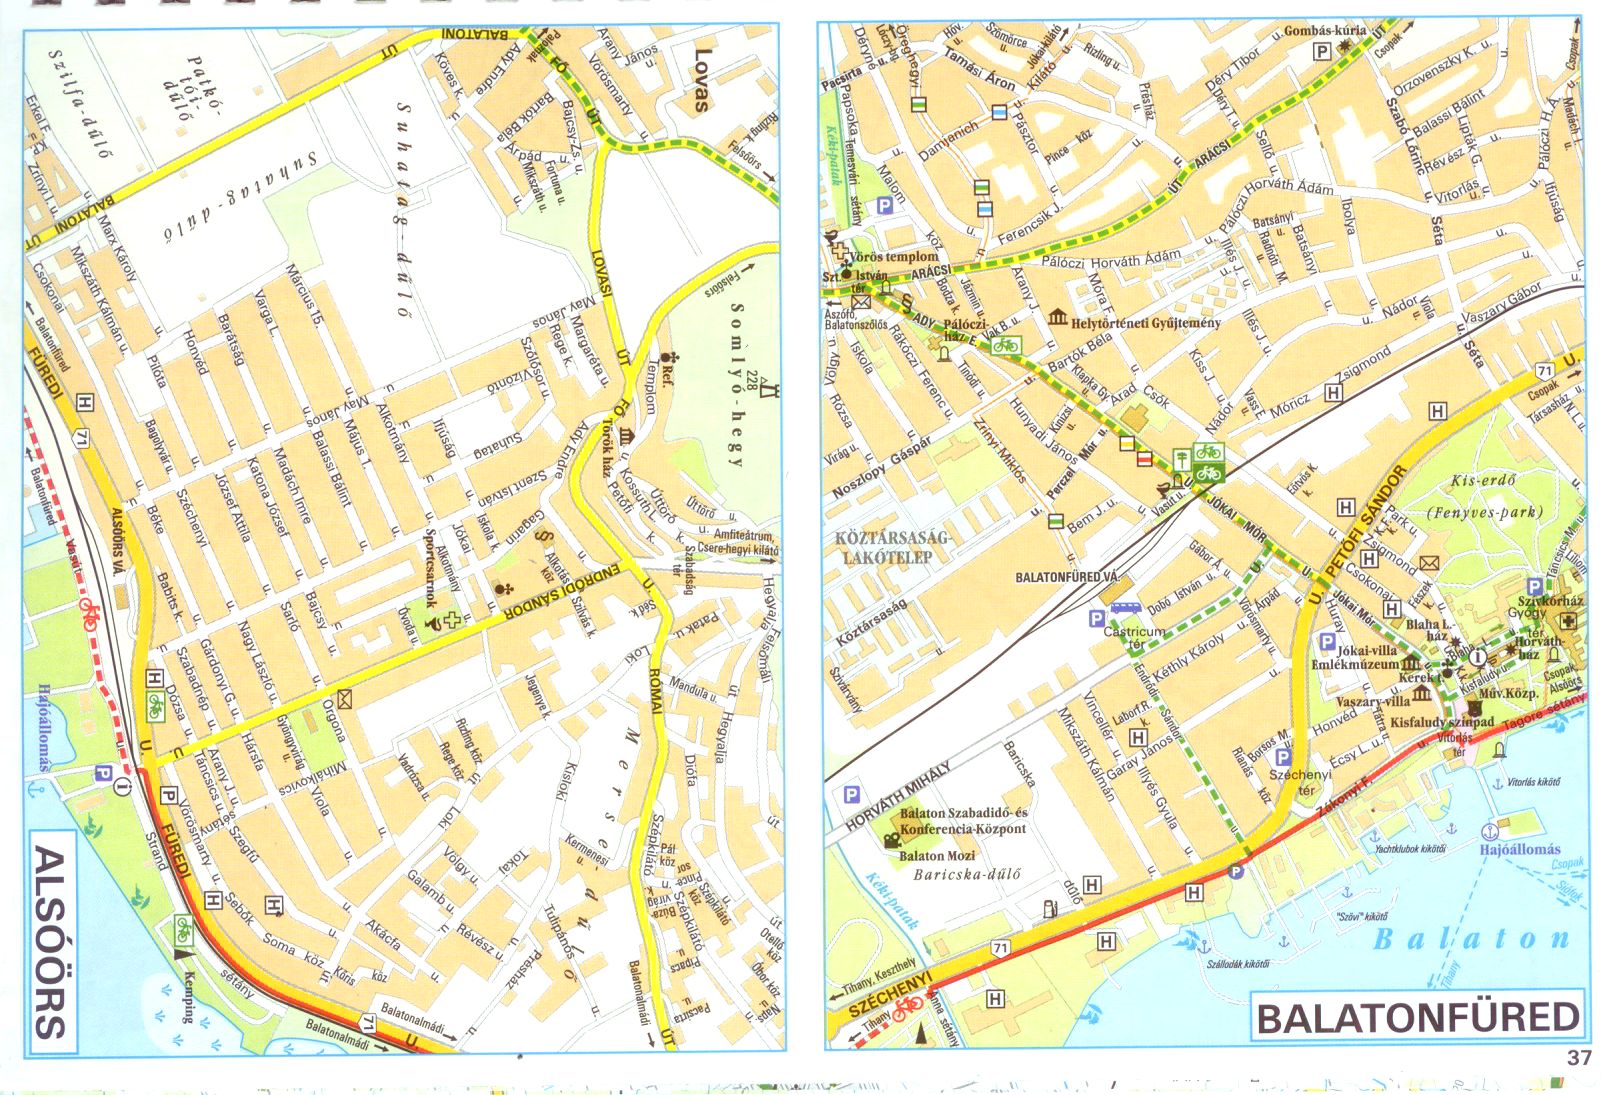 Balaton biciklis atlasz várostérkép minta